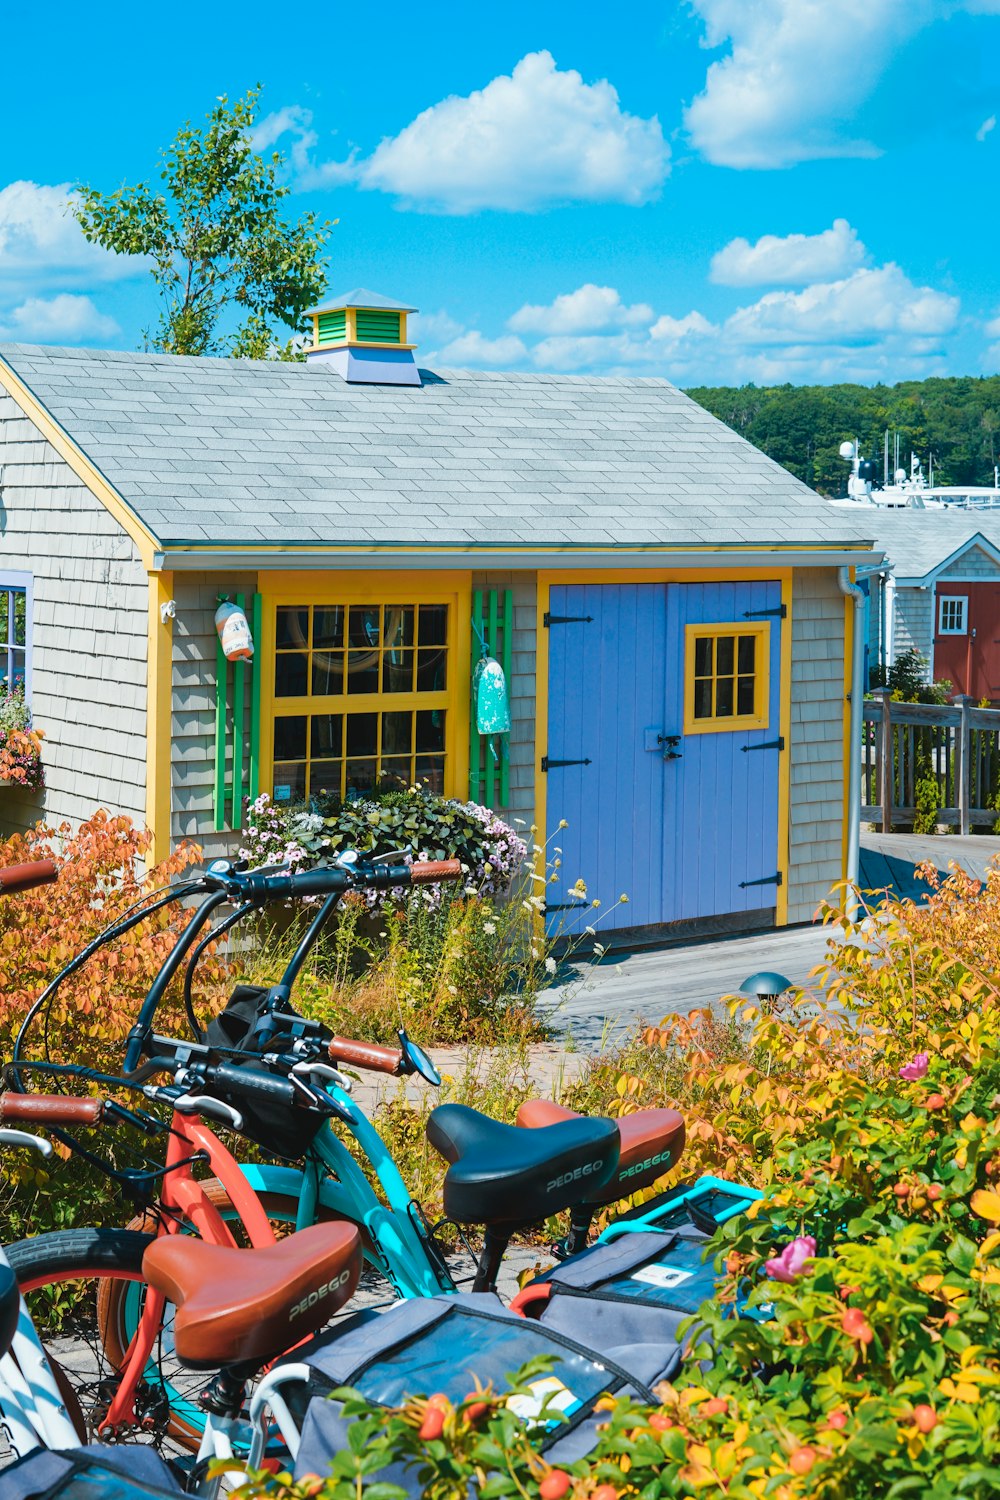 Biciclette parcheggiate vicino alla casa blu e grigia durante il giorno